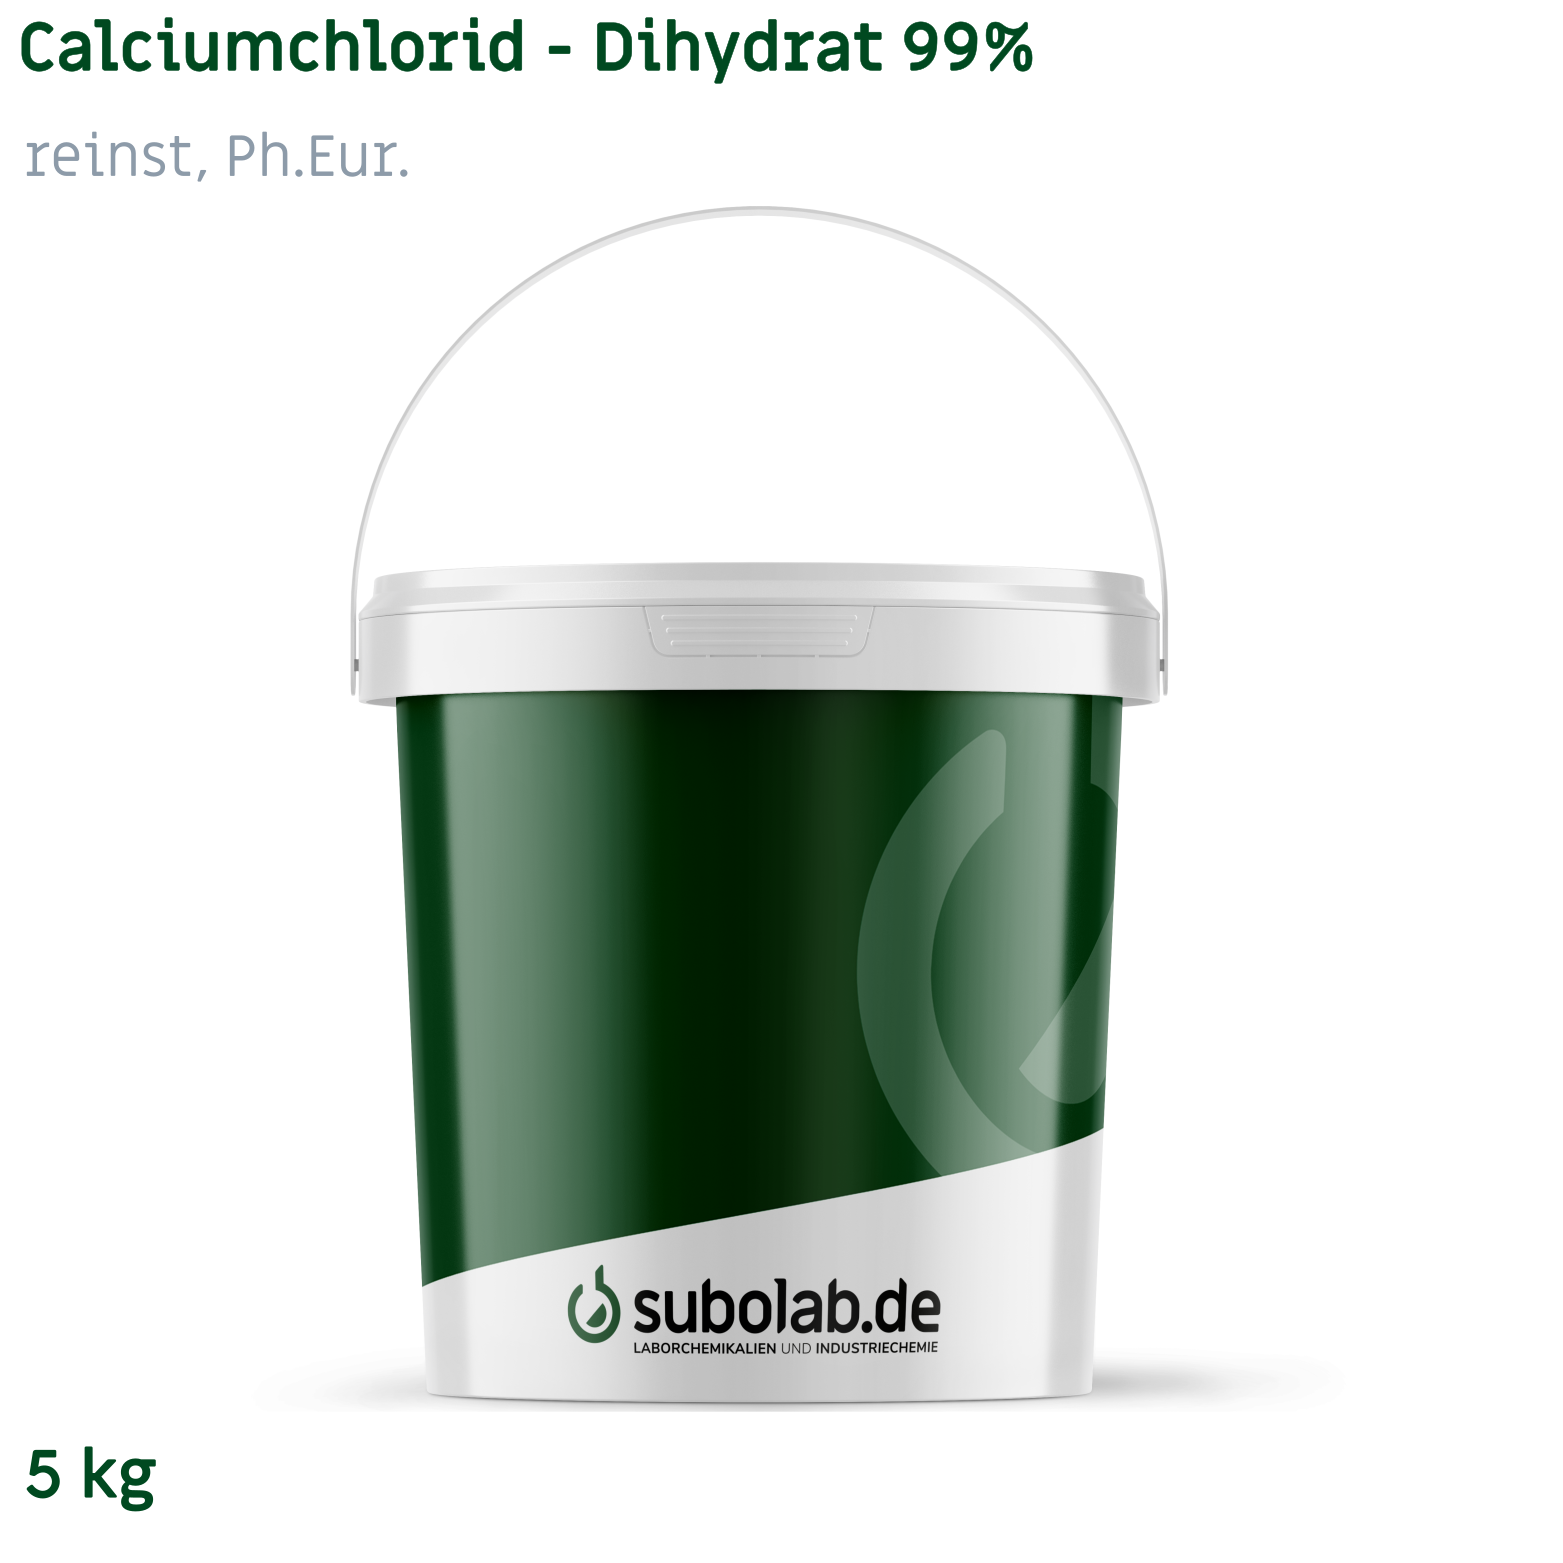 Bild von Calciumchlorid - Dihydrat 99% reinst, Ph.Eur. (5 kg)